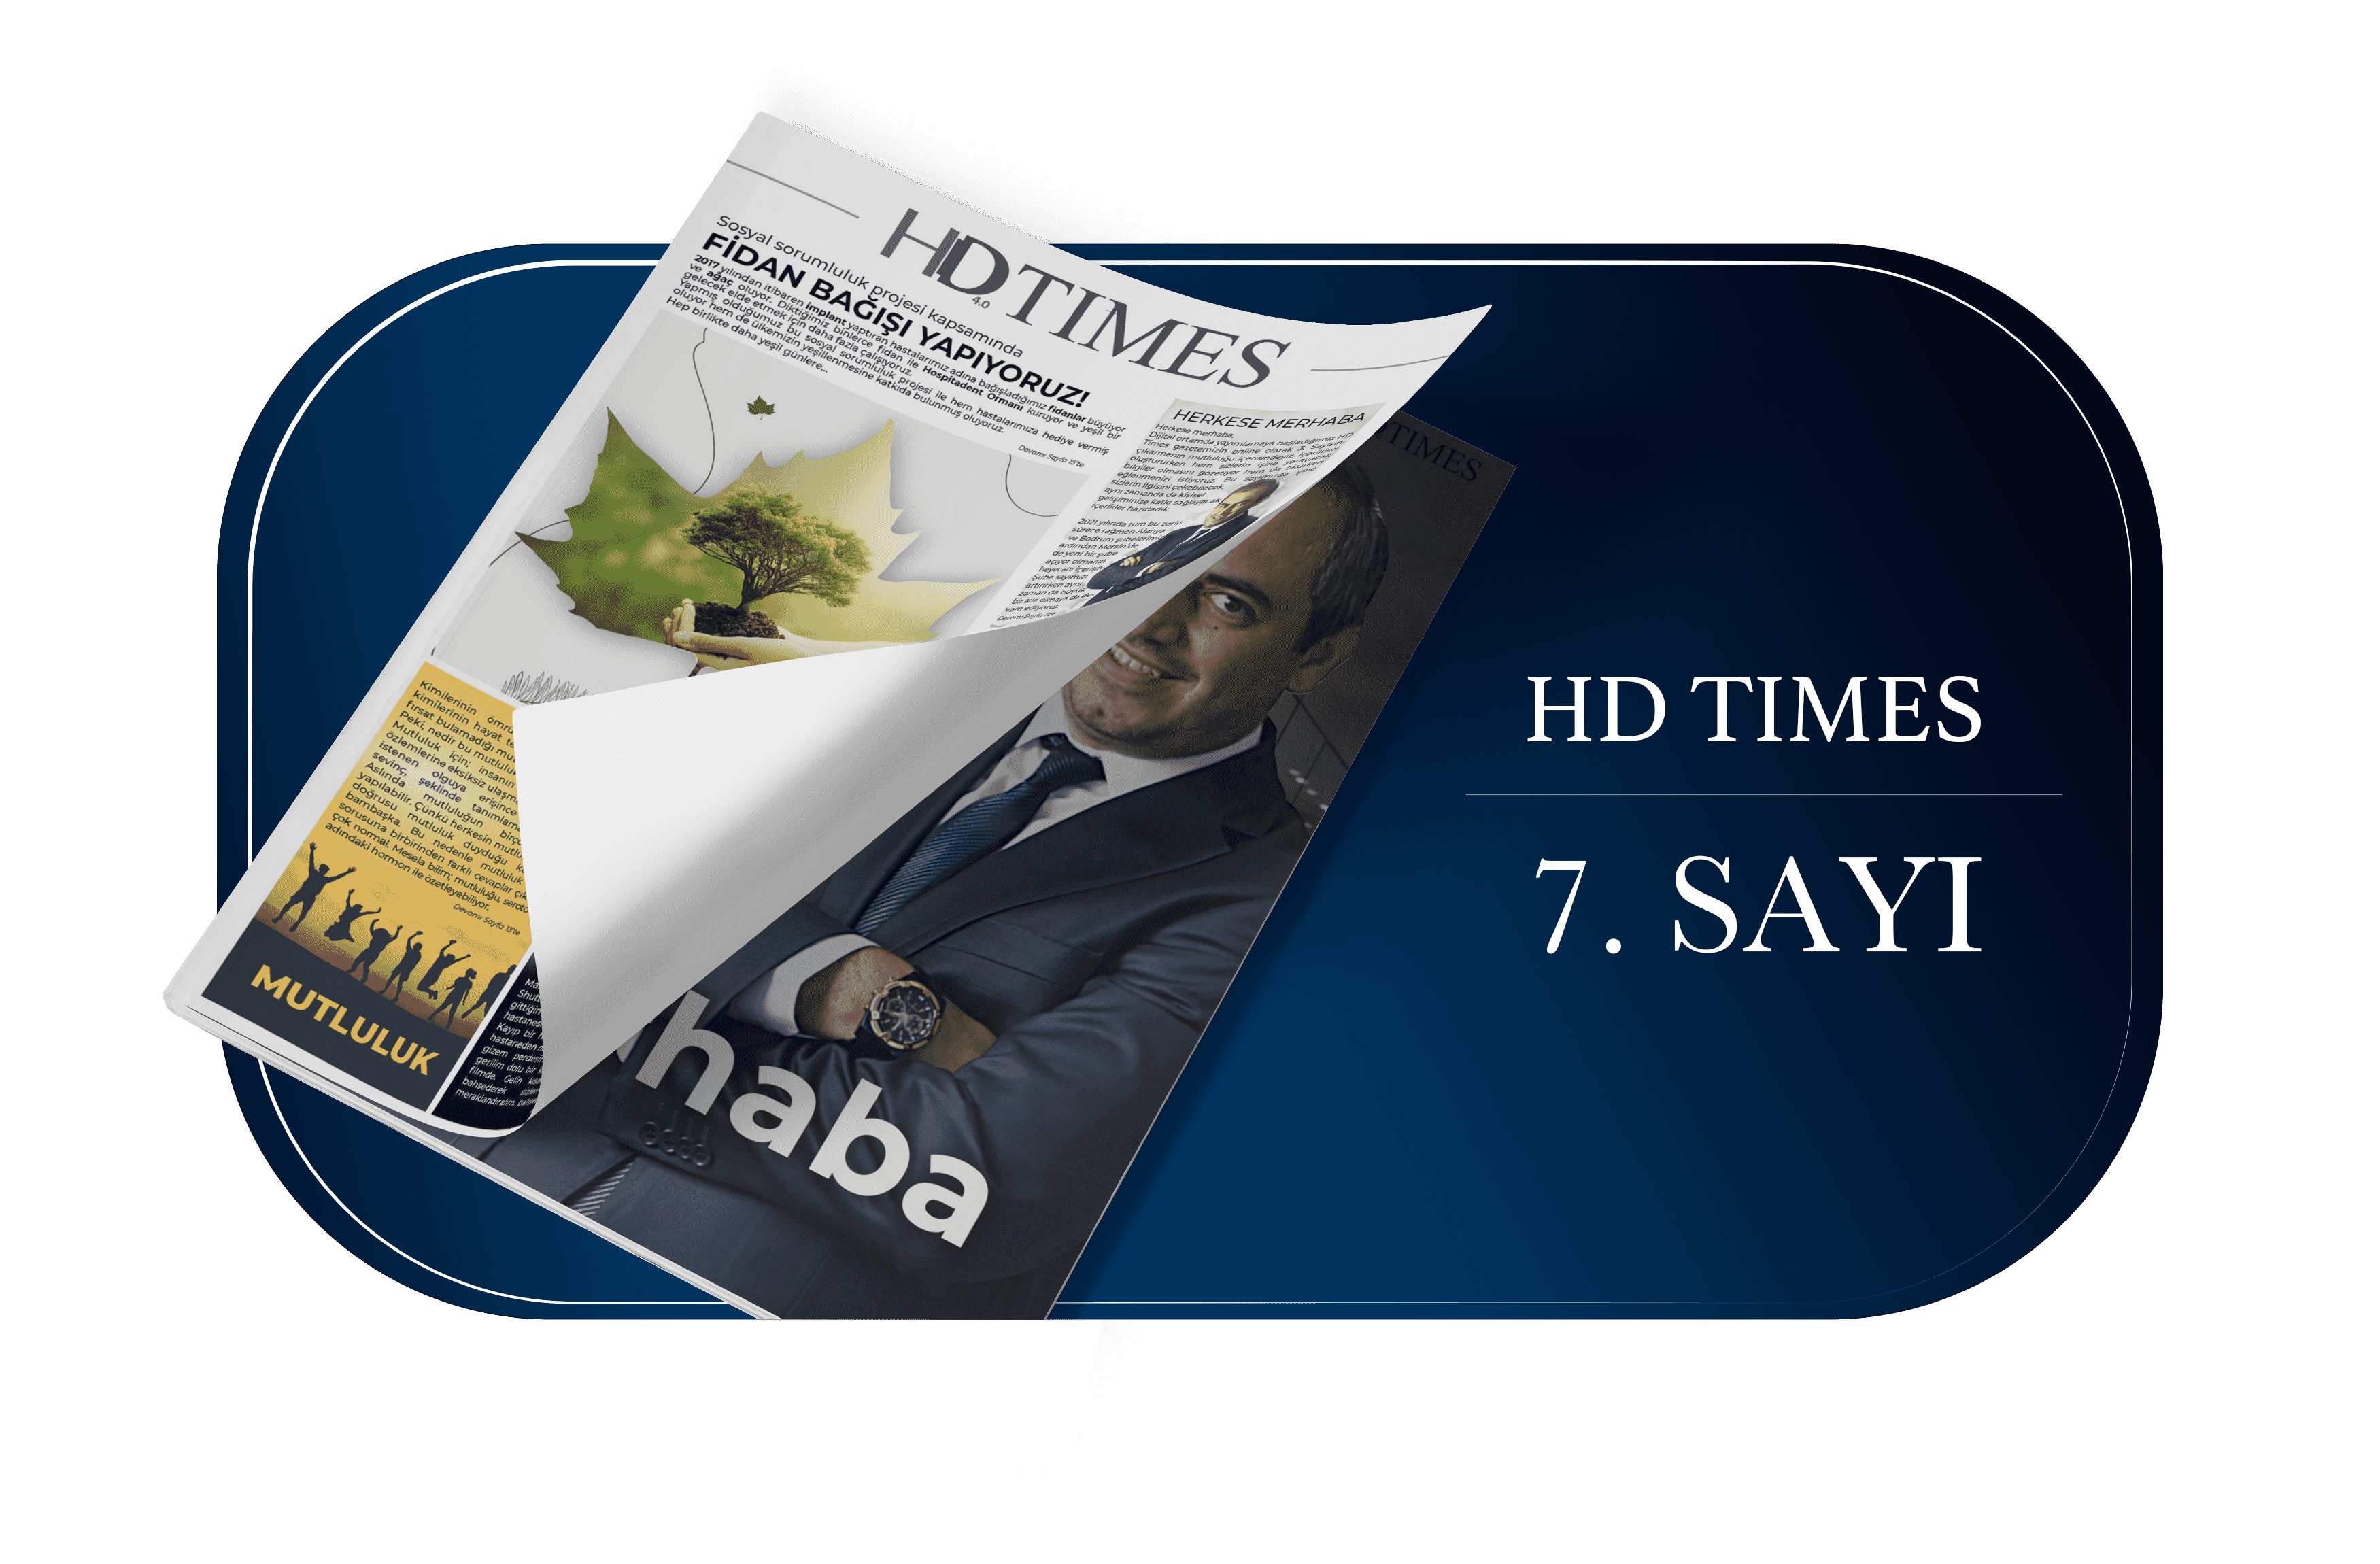 7. sayi Publicaciones De HD Times